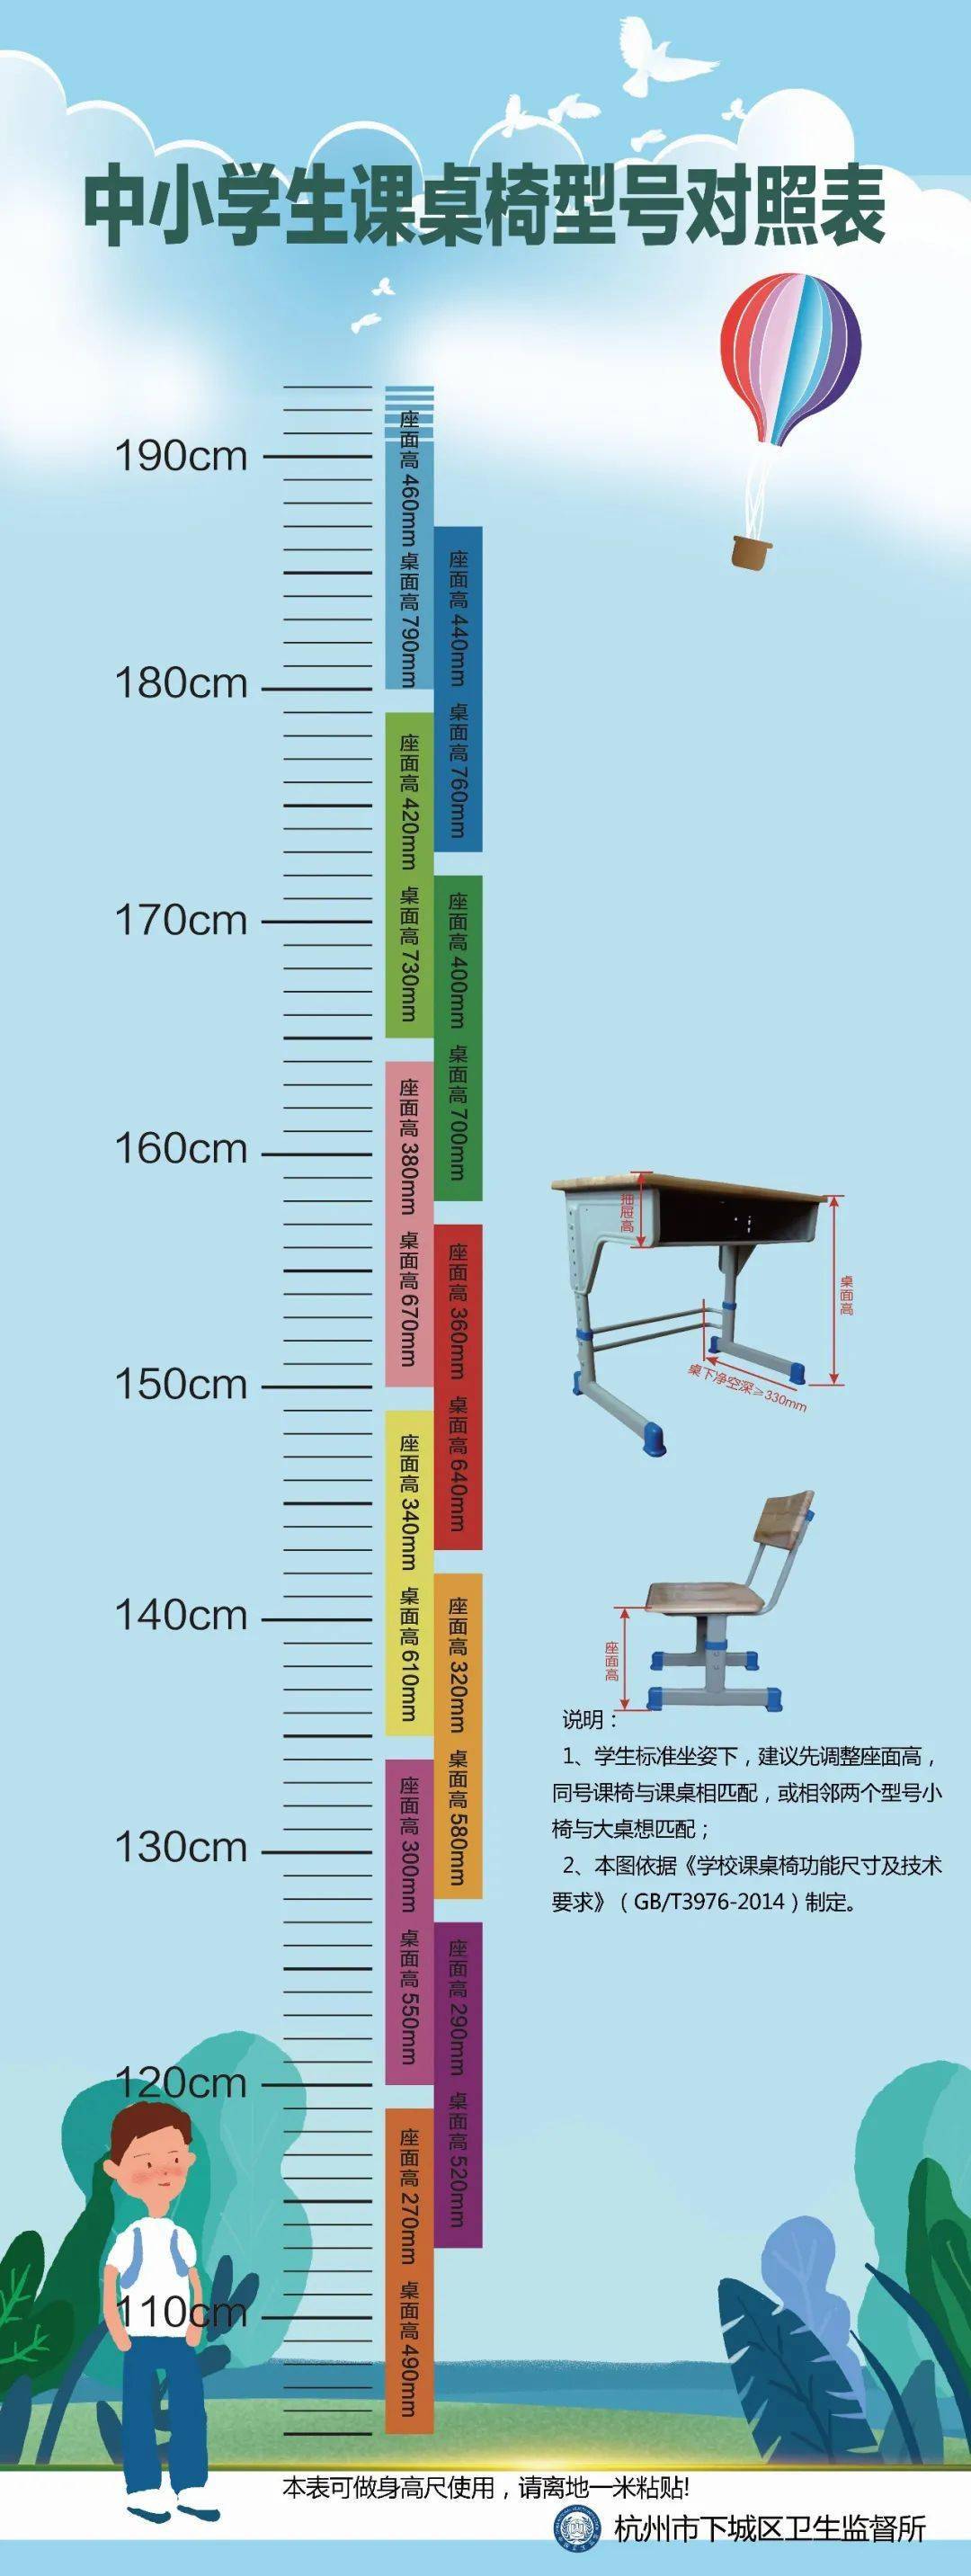 桌椅高度与身高对比表图片